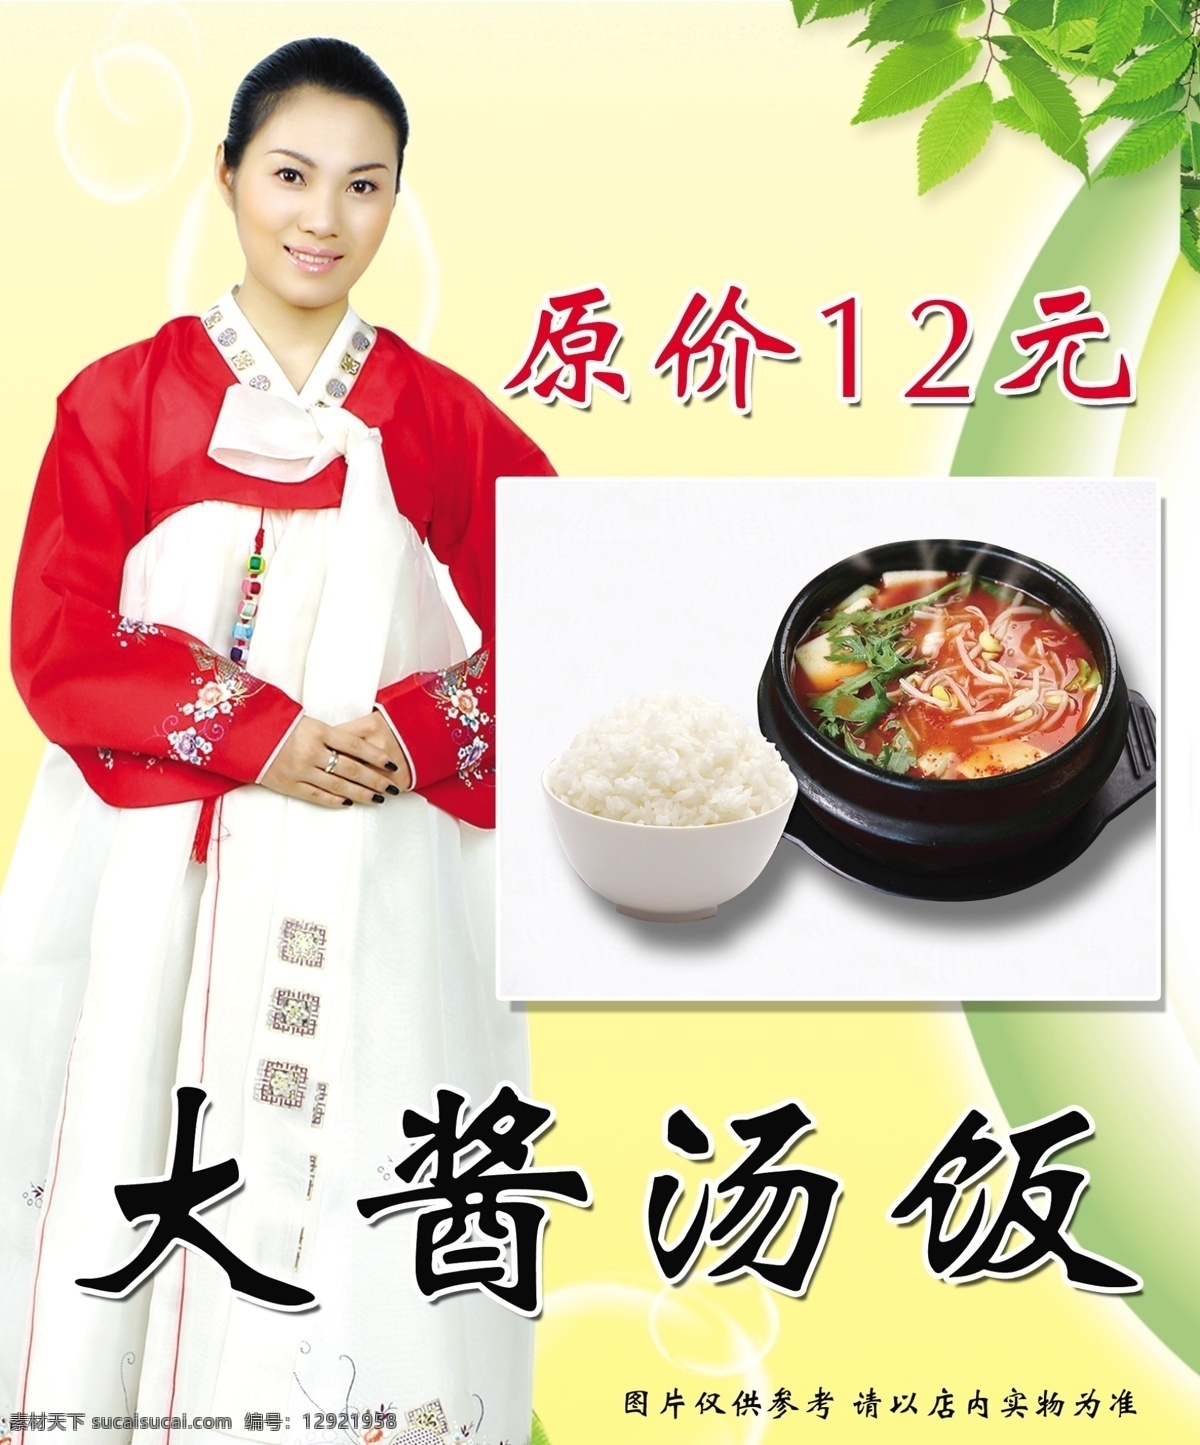 大酱汤饭 喷绘 韩服 朝鲜服装 米饭 大酱汤 室外广告设计